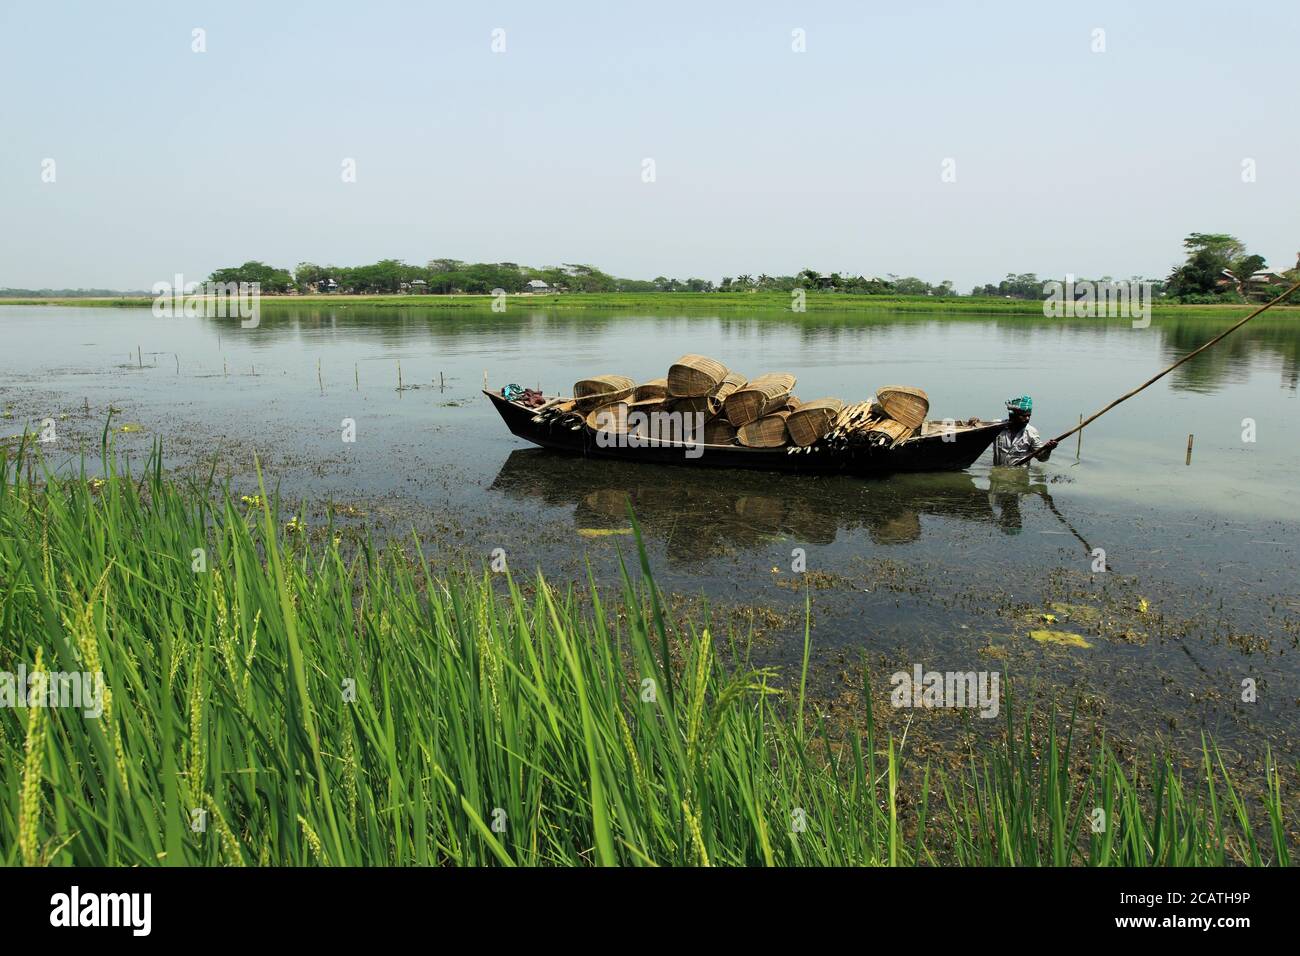 Traditionnel, le Bangladesh bateaux sur la rive de Jamuna la rivière. Dans le delta des fleuves Ganga (Padma), le Brahmaputra et le Meghna vivent sur l'eau. Banque D'Images